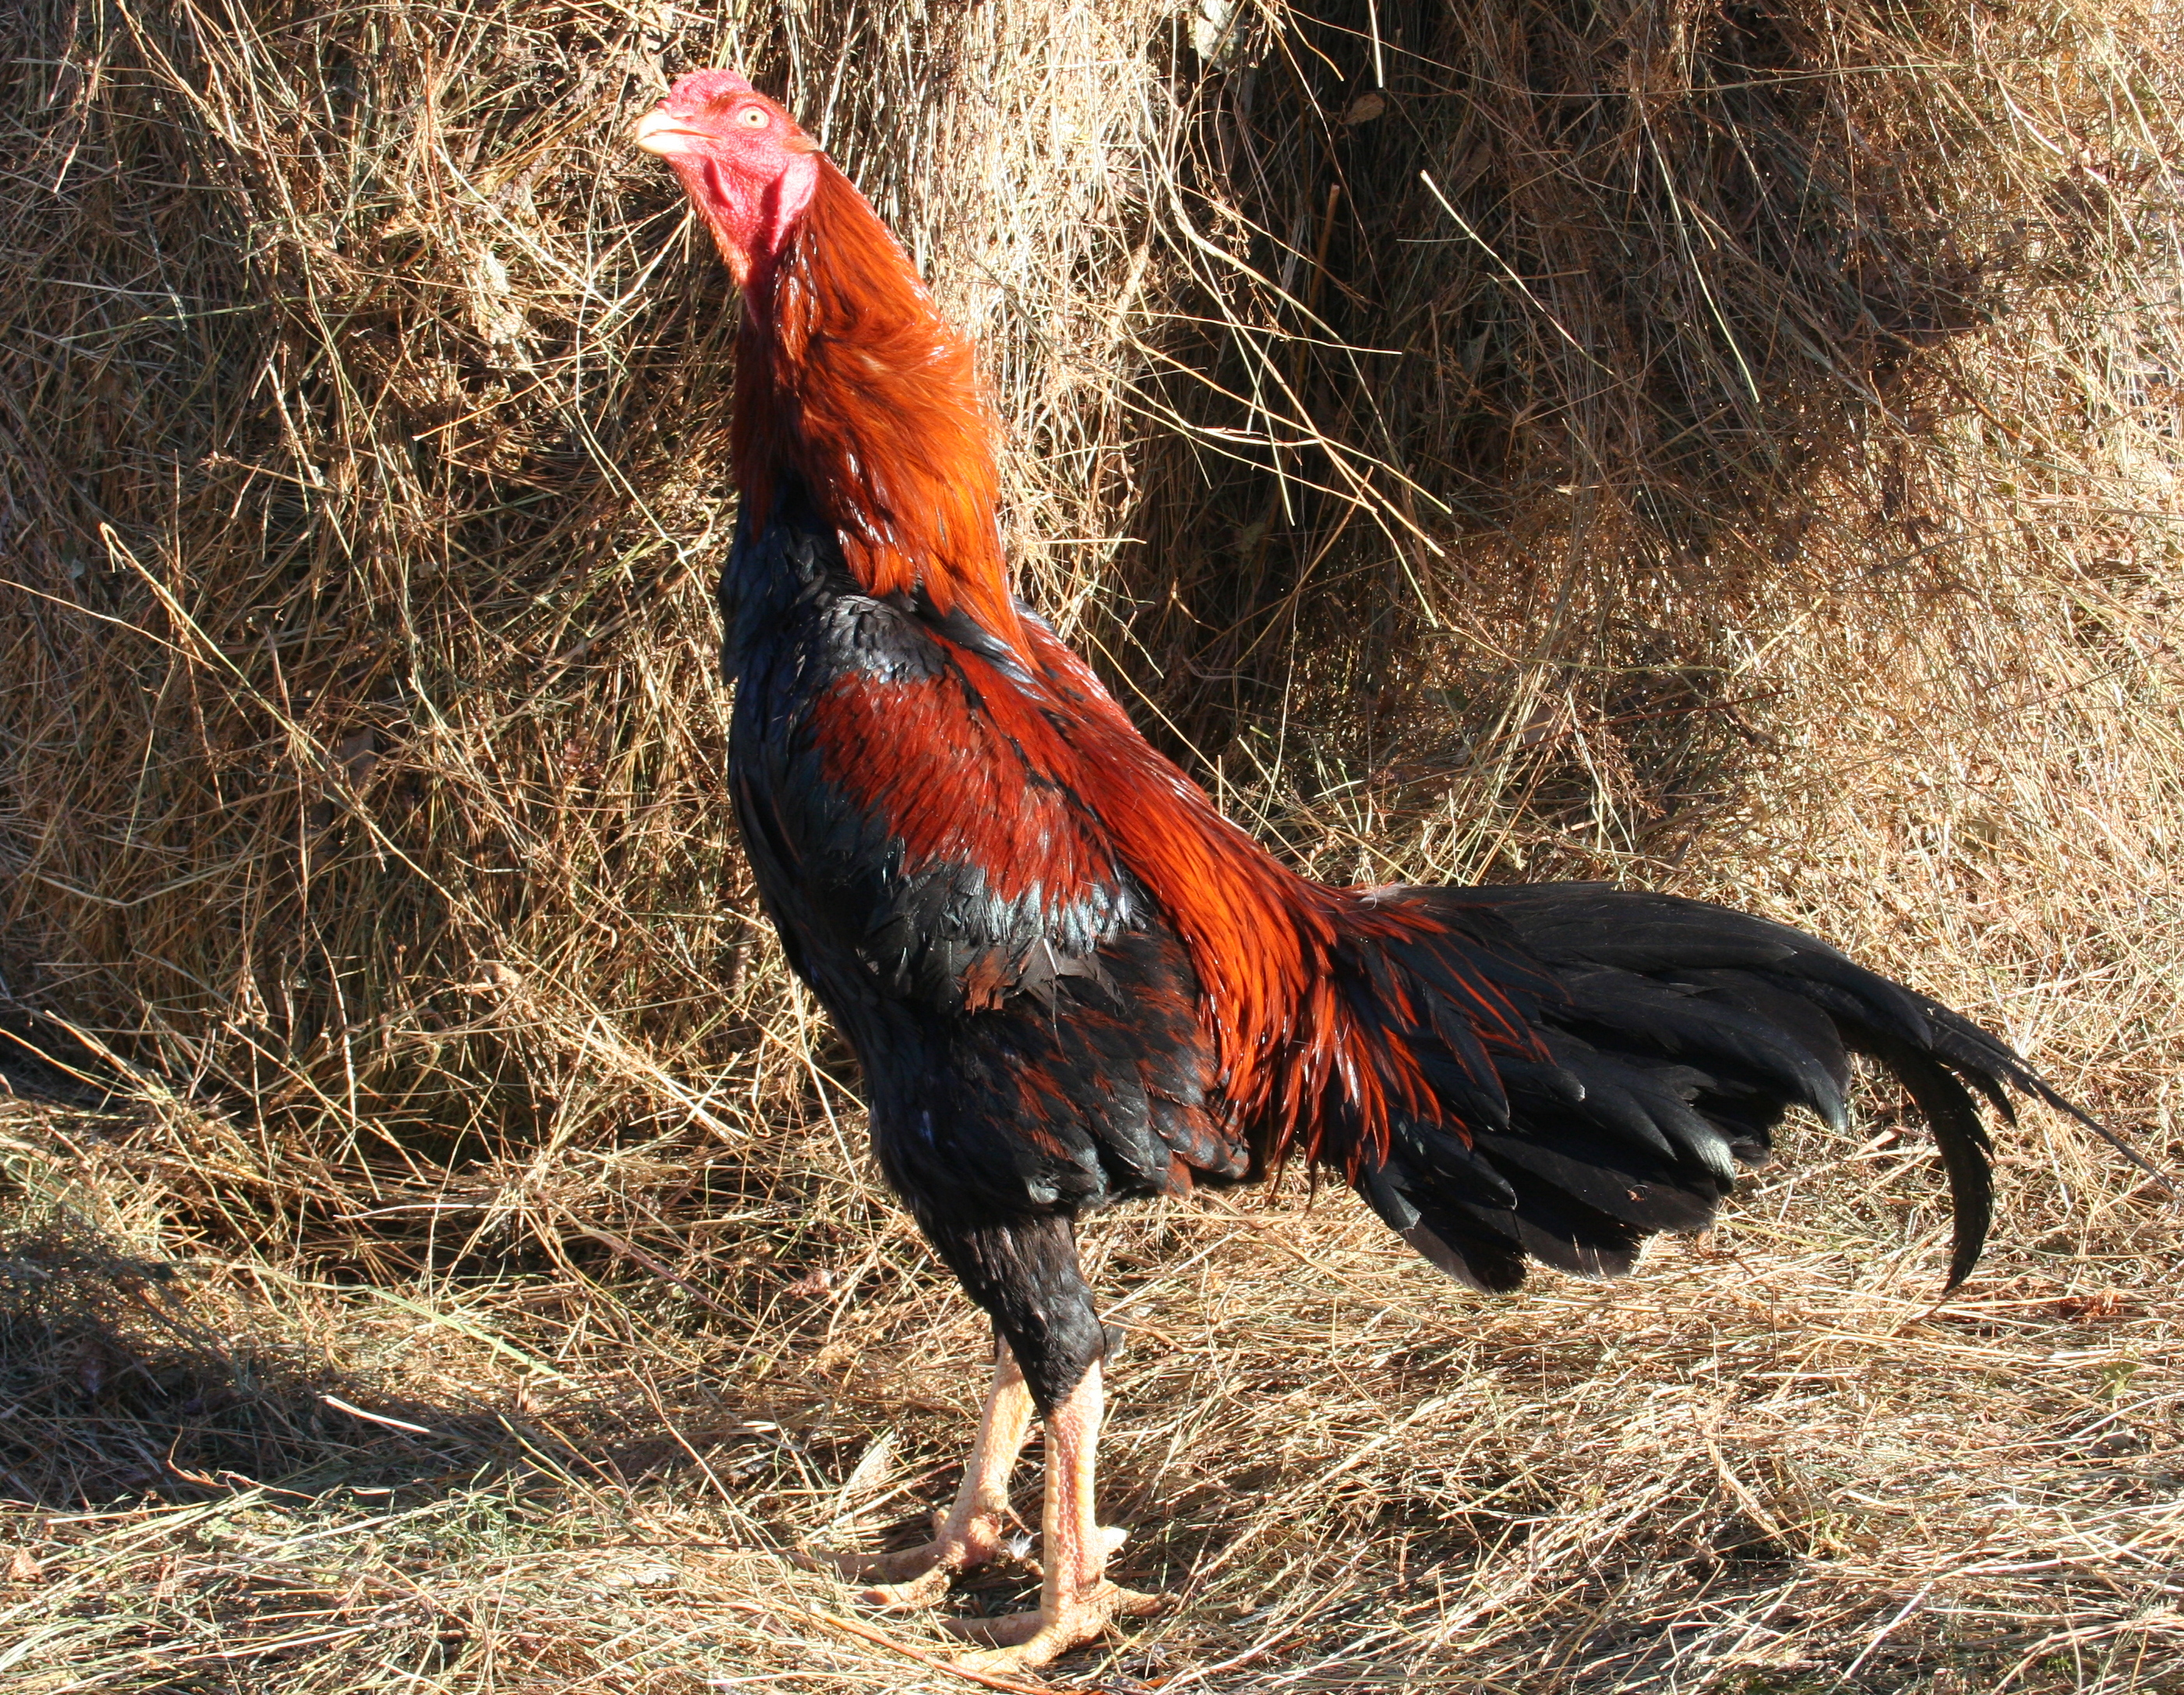 Узбекская Бойцовая порода кур